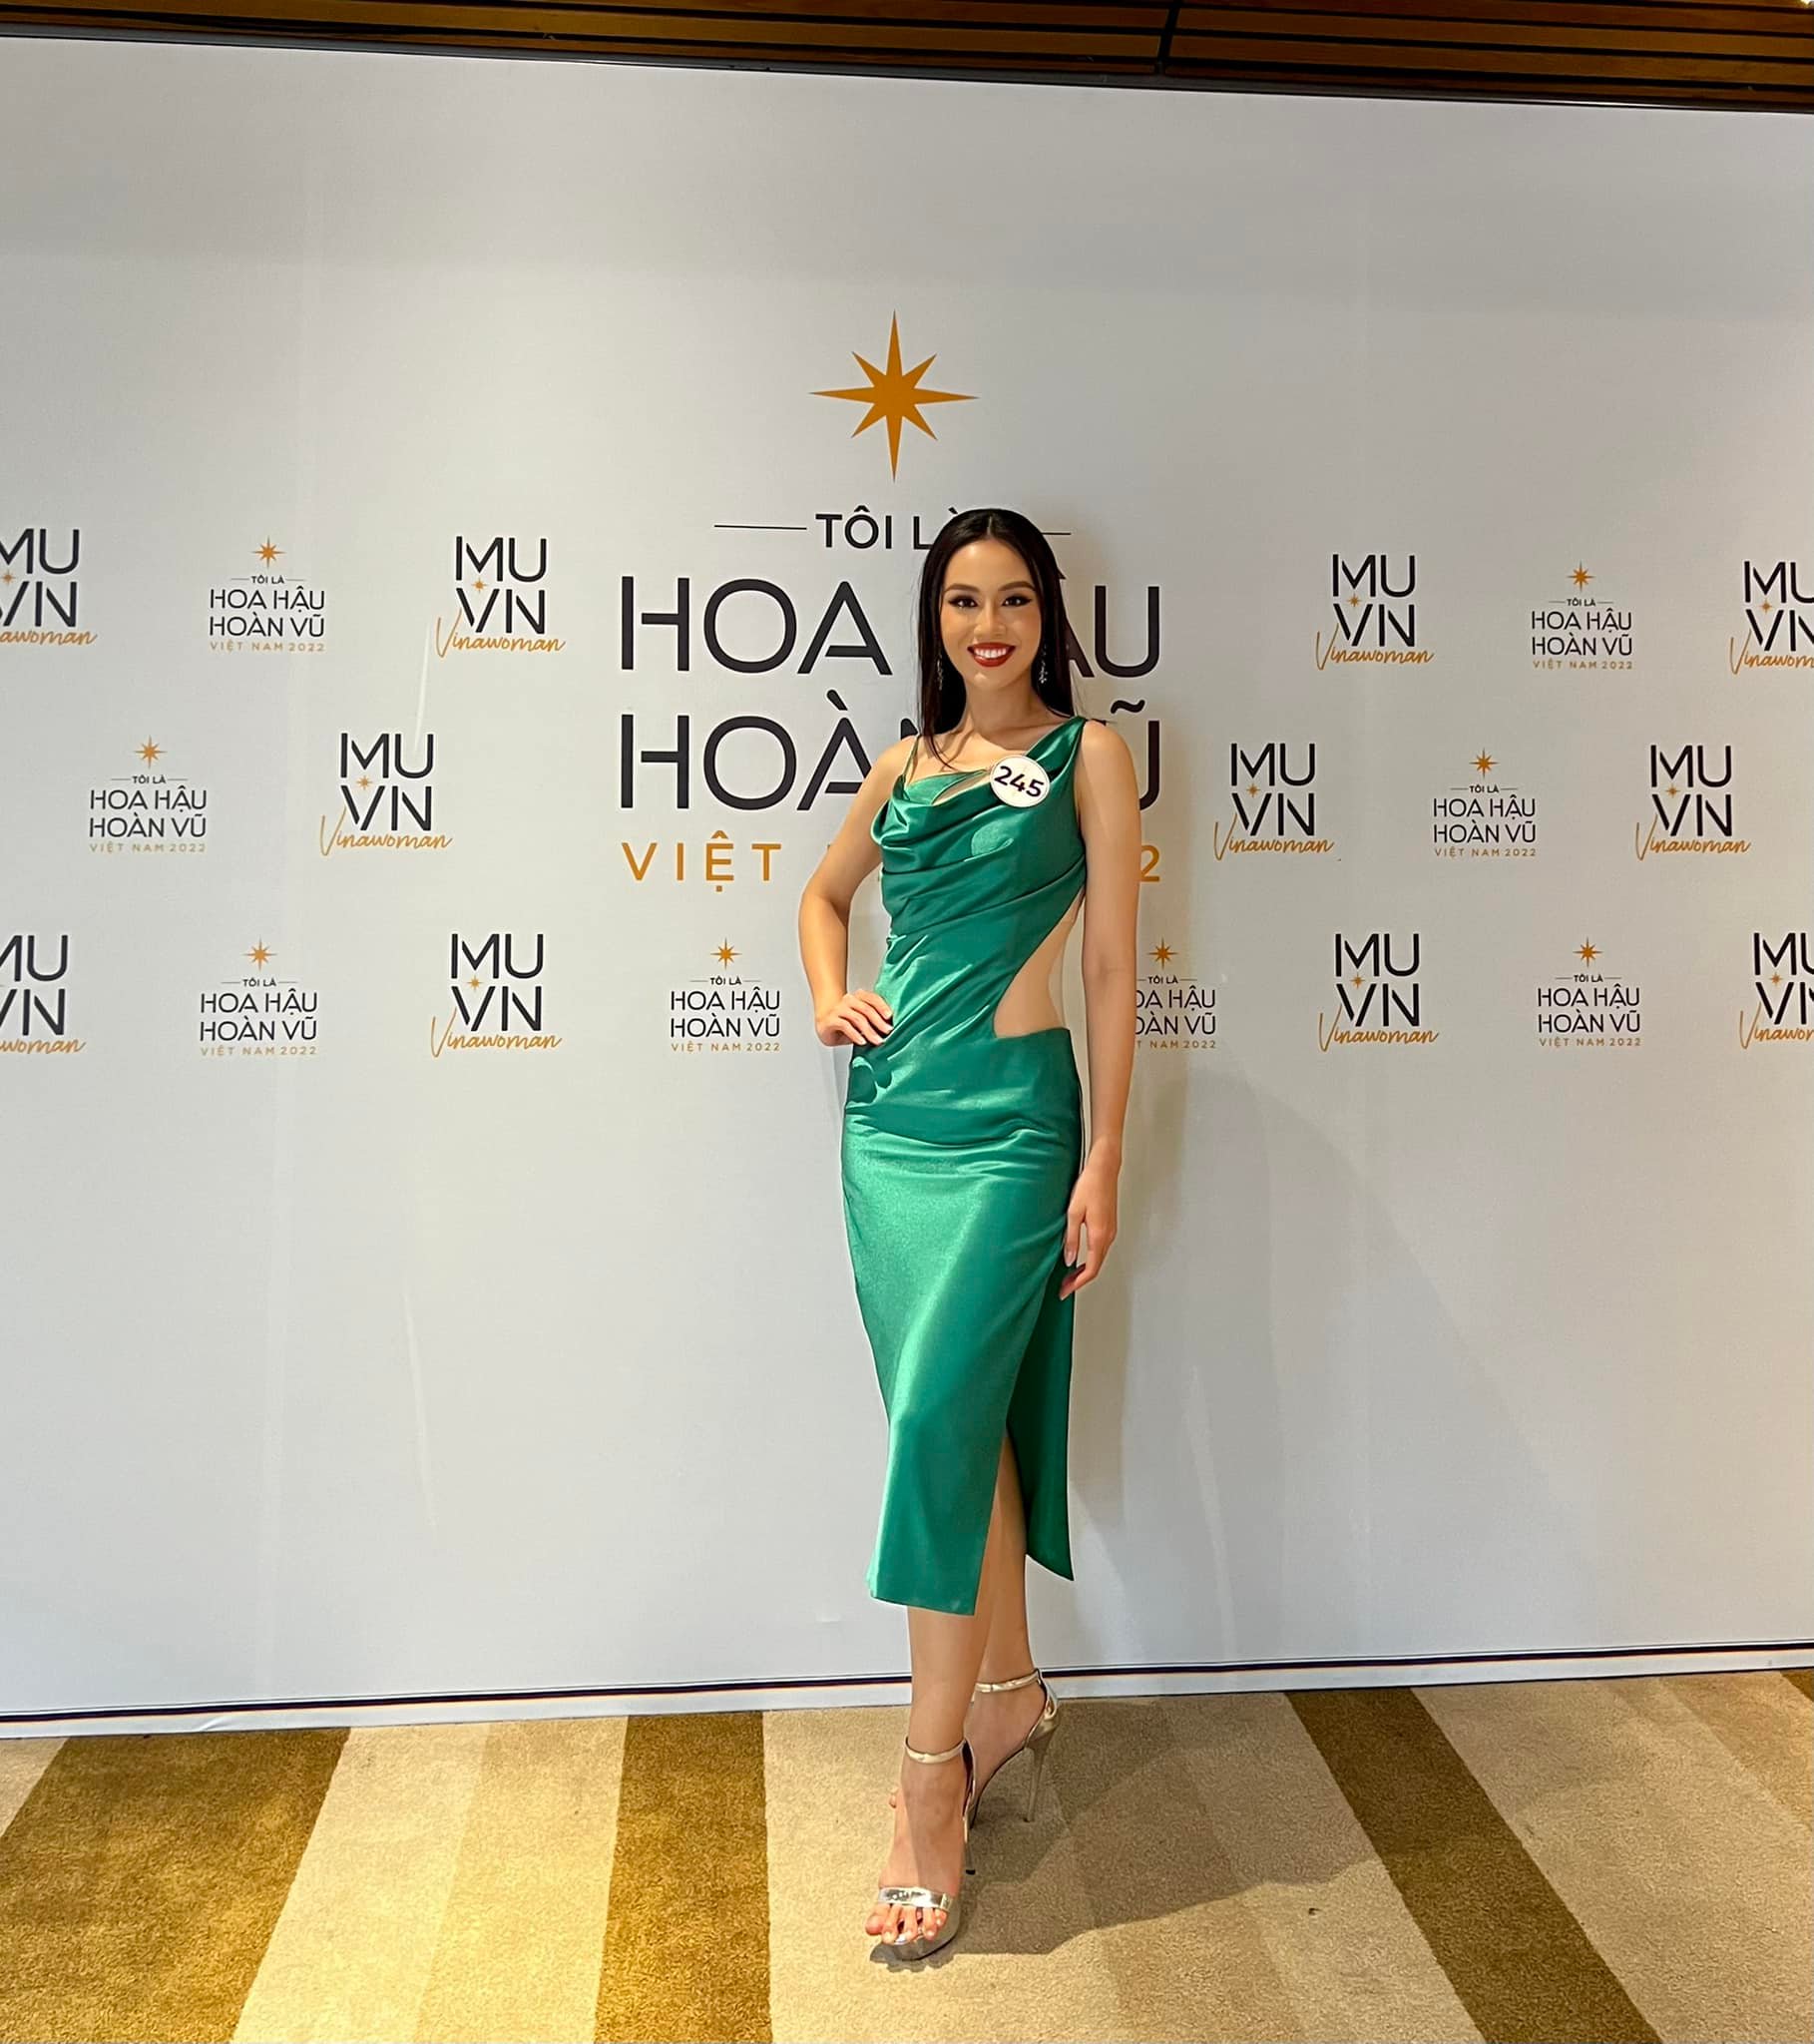 Soi học vấn của dàn thí sinh Miss Universe Vietnam 2022: Người thành thạo 2-3 ngoại ngữ, người luôn trong top đầu trường - Ảnh 4.